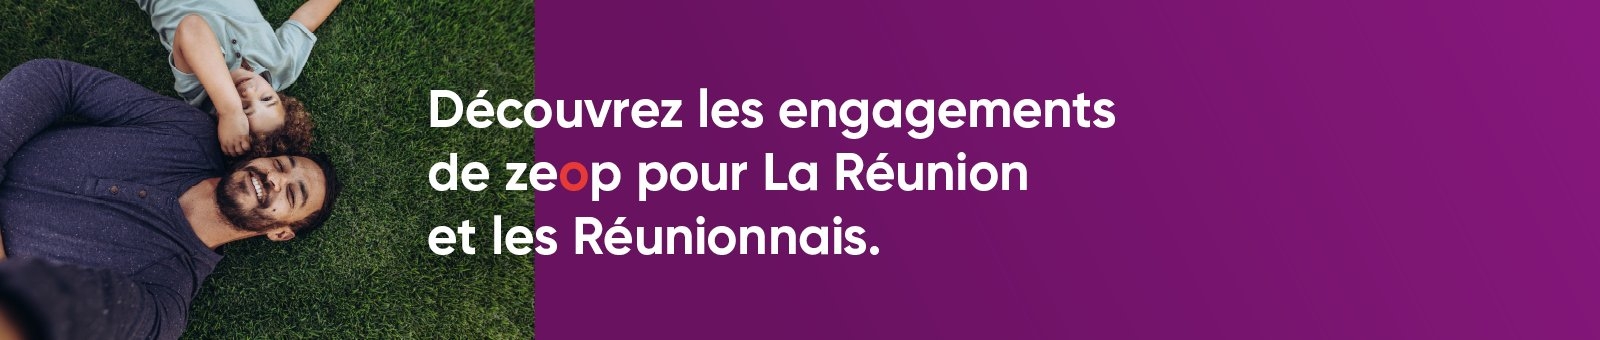 zeop s'engage pour La Runion & les Runionnais.